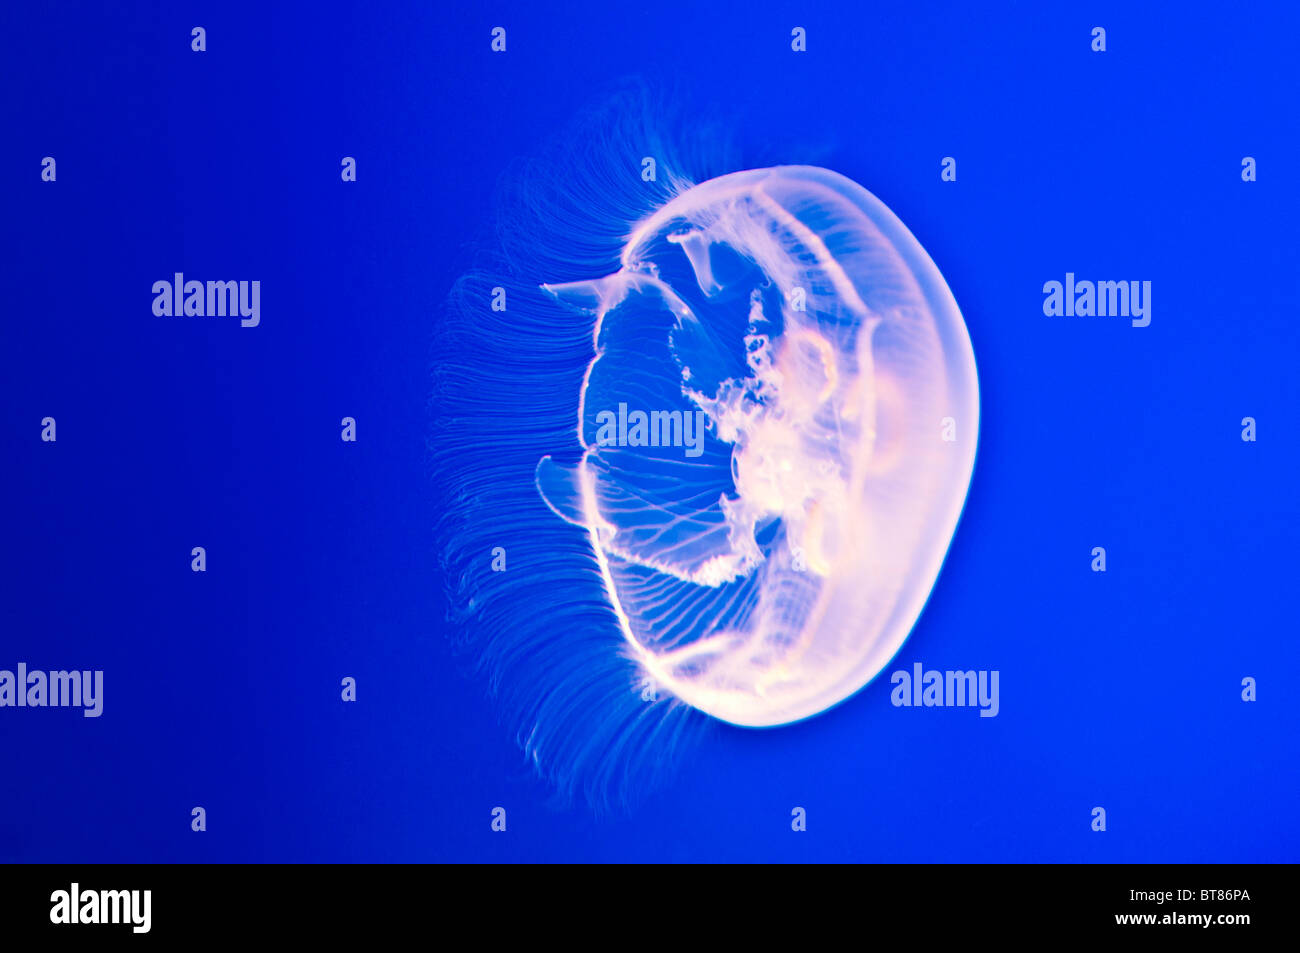 Les gelées de la lune (Aurelia labiata) à l'Aquarium de la baie de Monterey, Monterey, Californie Banque D'Images